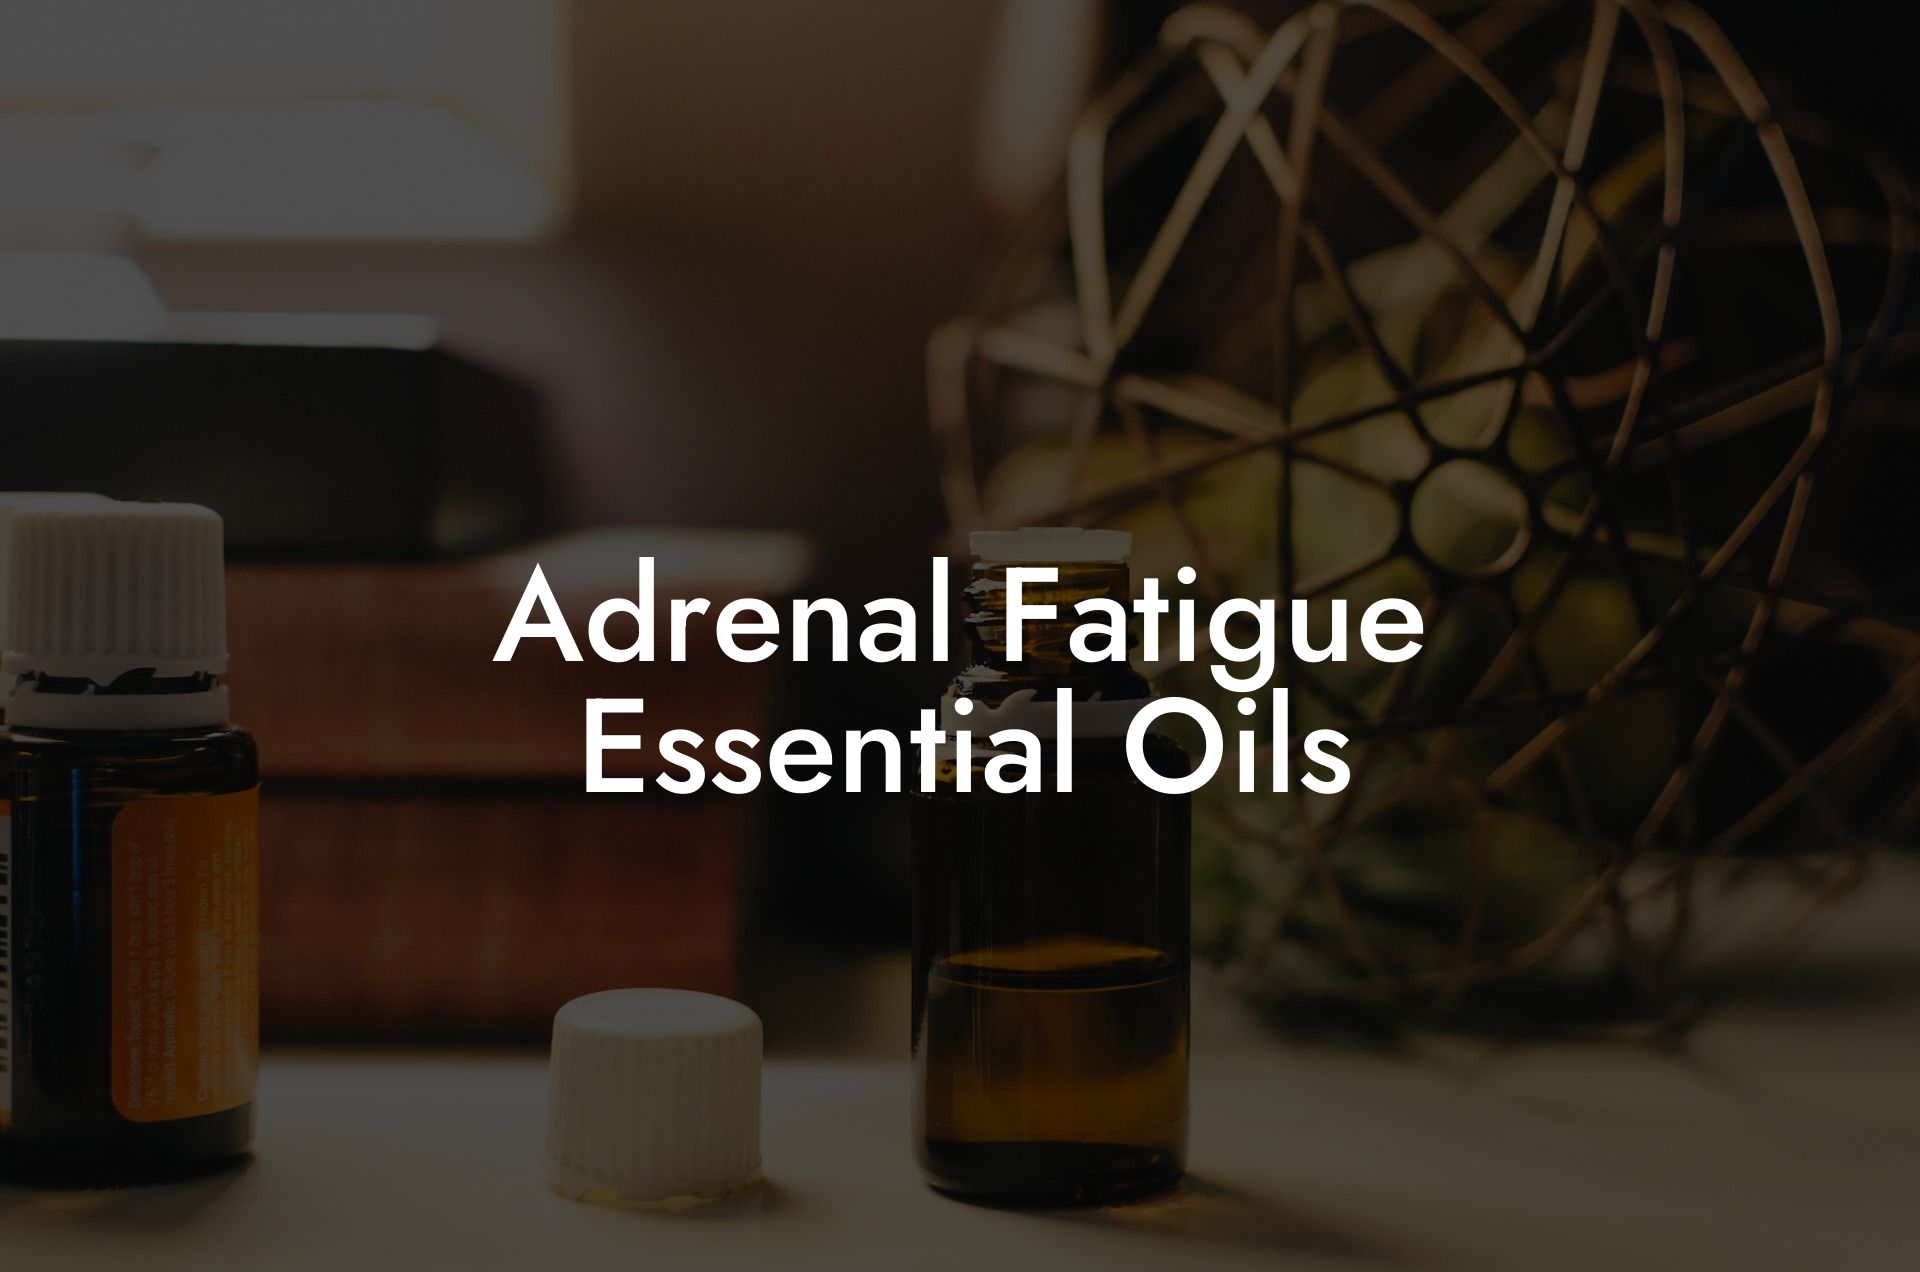 Adrenal Fatigue Essential Oils